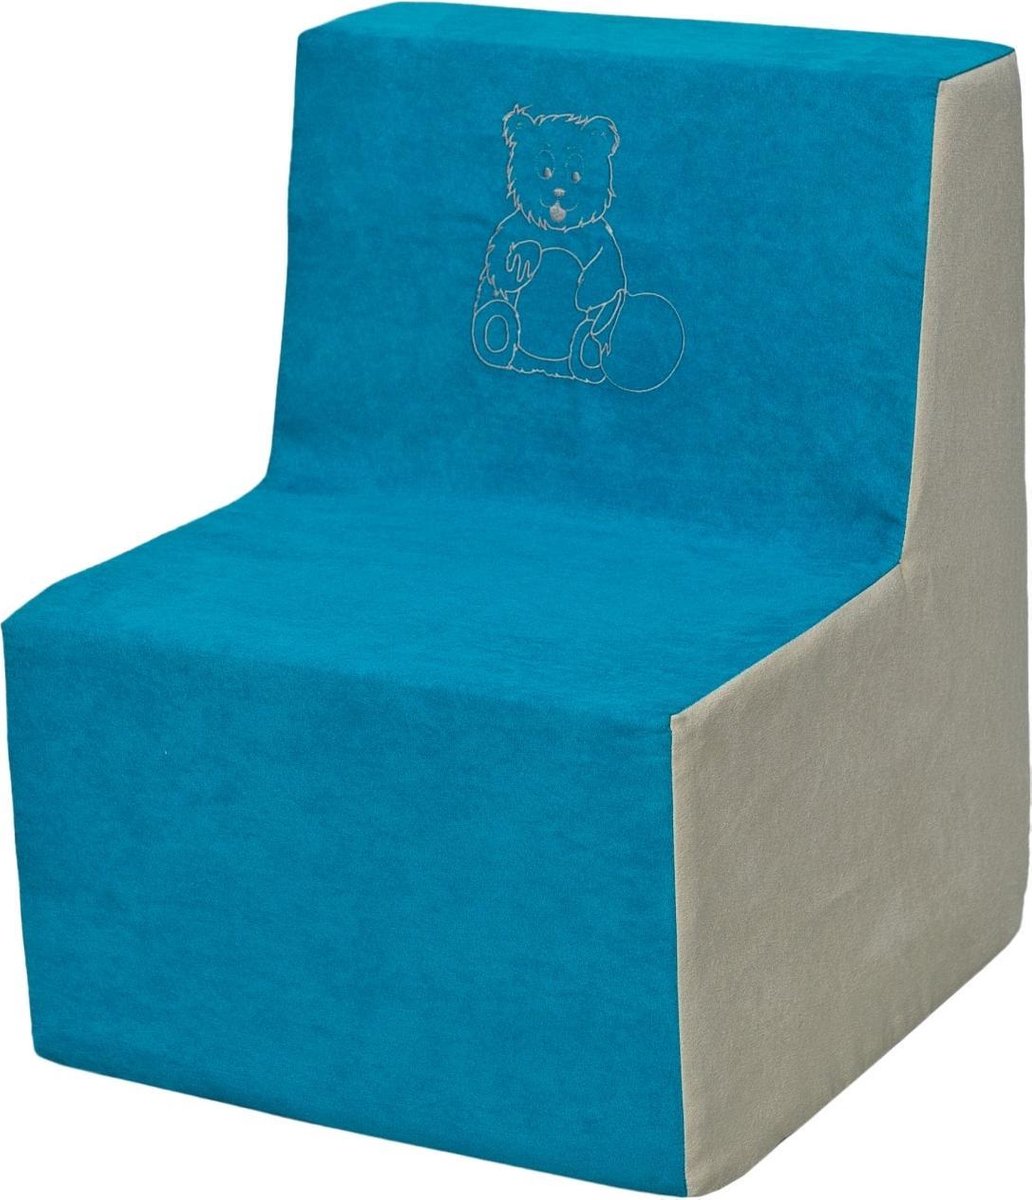 Zachte foam stoel, borduurwerk, kinderen, comfortabel, zetel, kinderdagverblijf, Kids meubels, spelen, ontspannen - blauw en beige